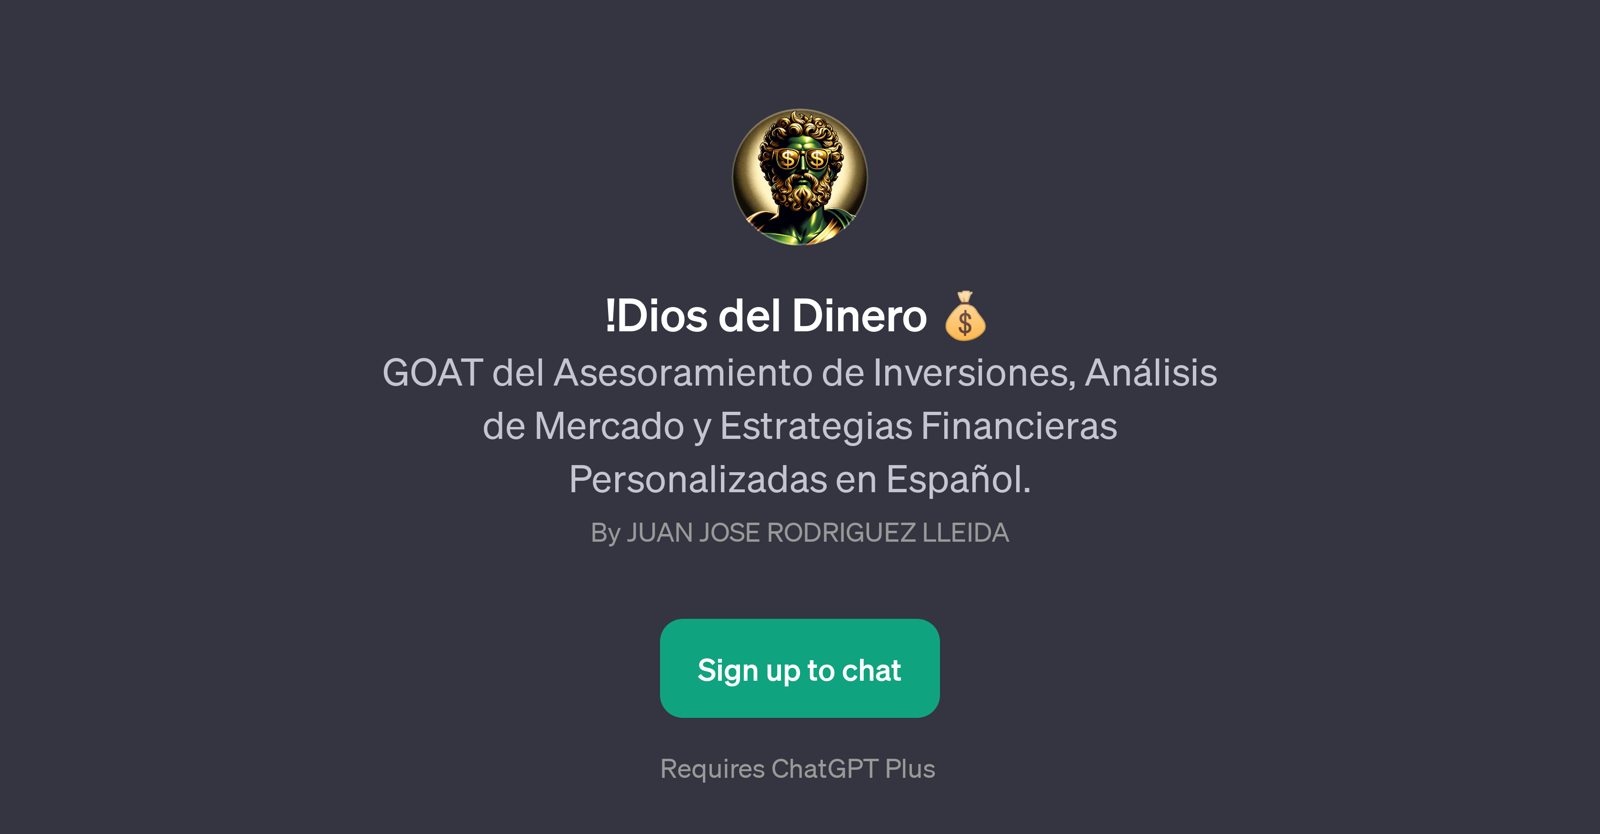 !Dios del Dinero website